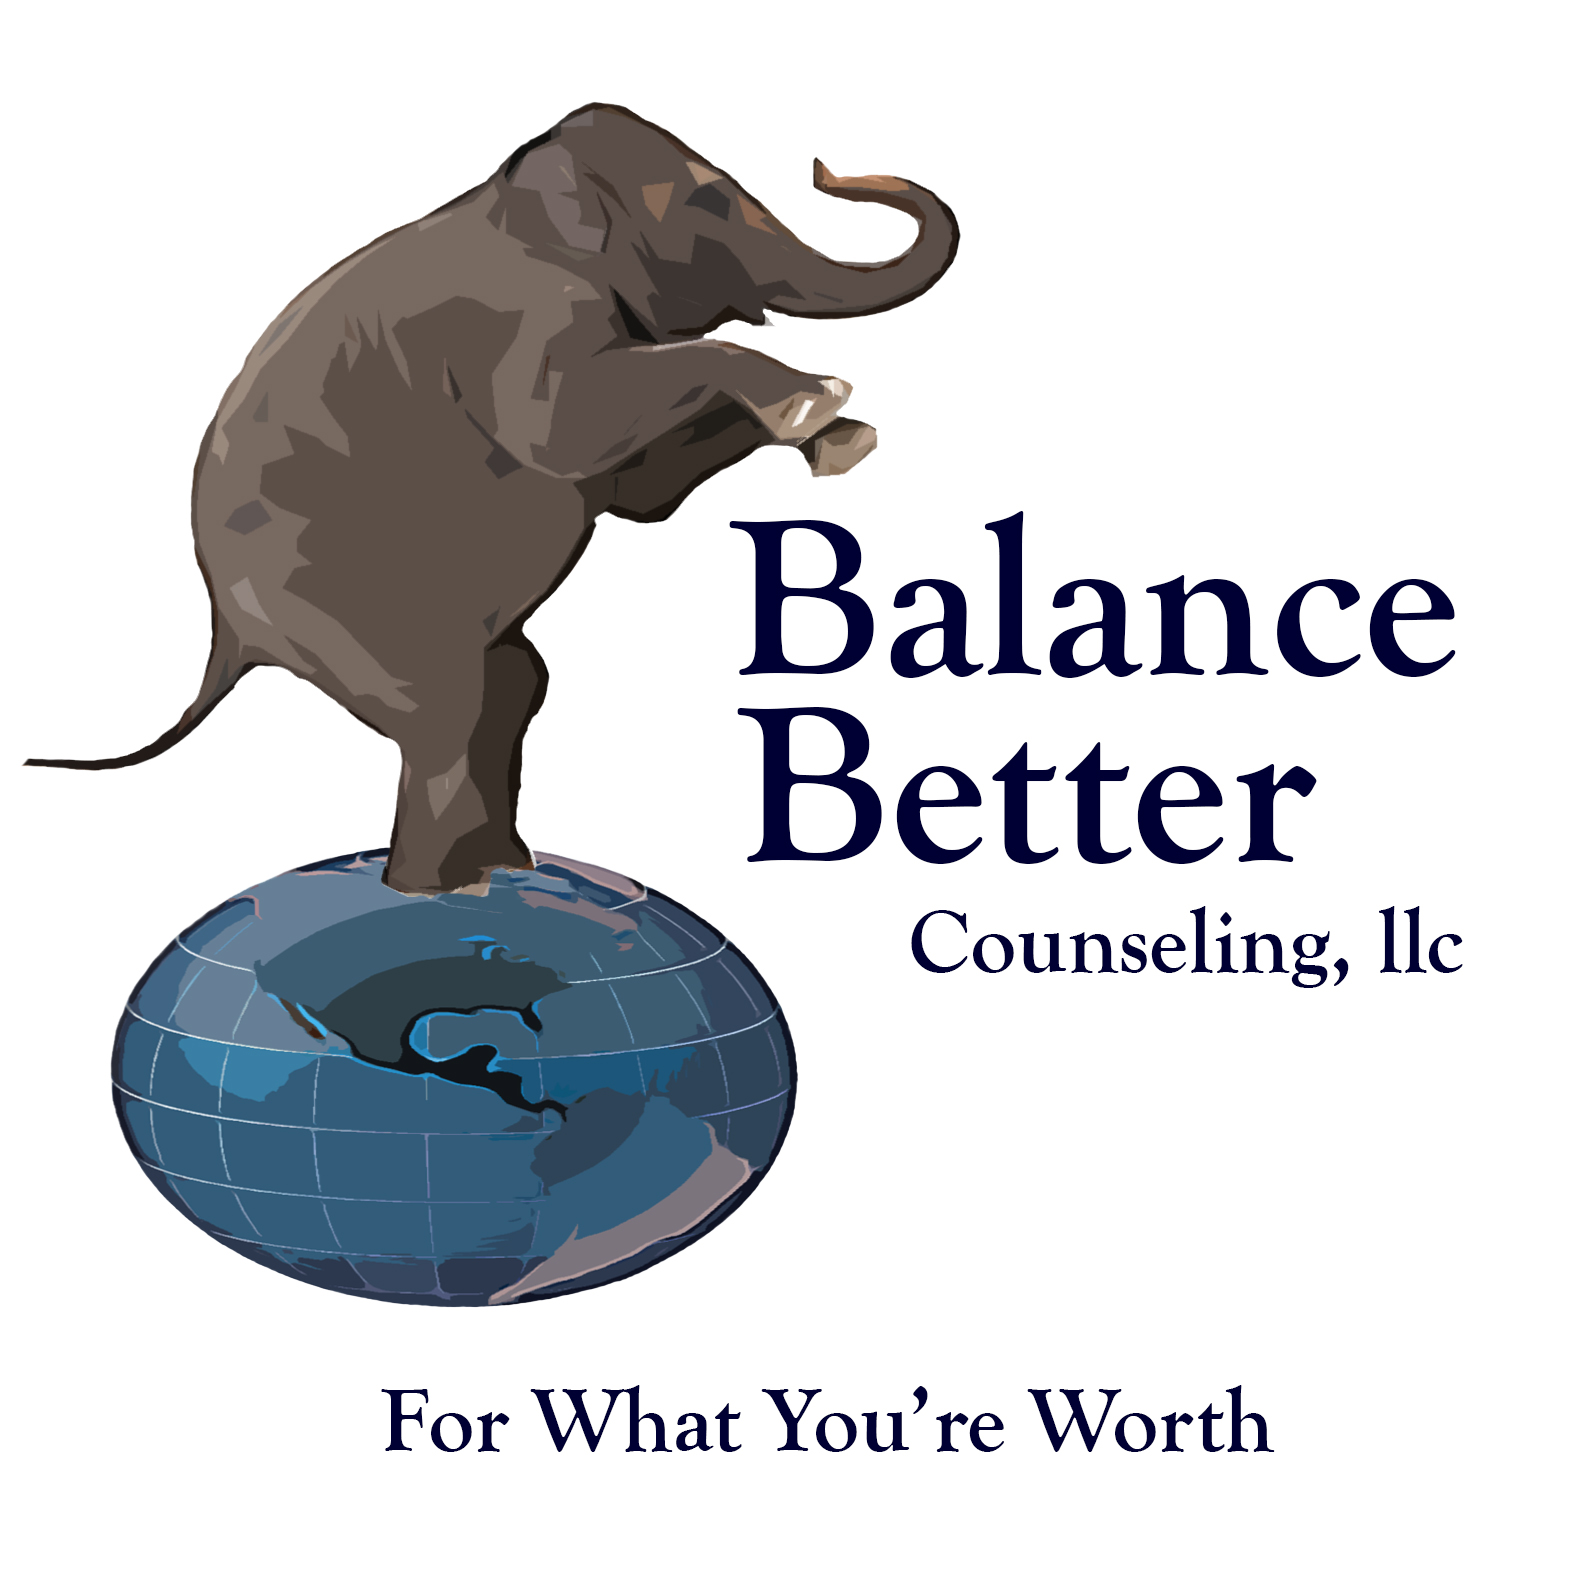 Balance Better Counseling